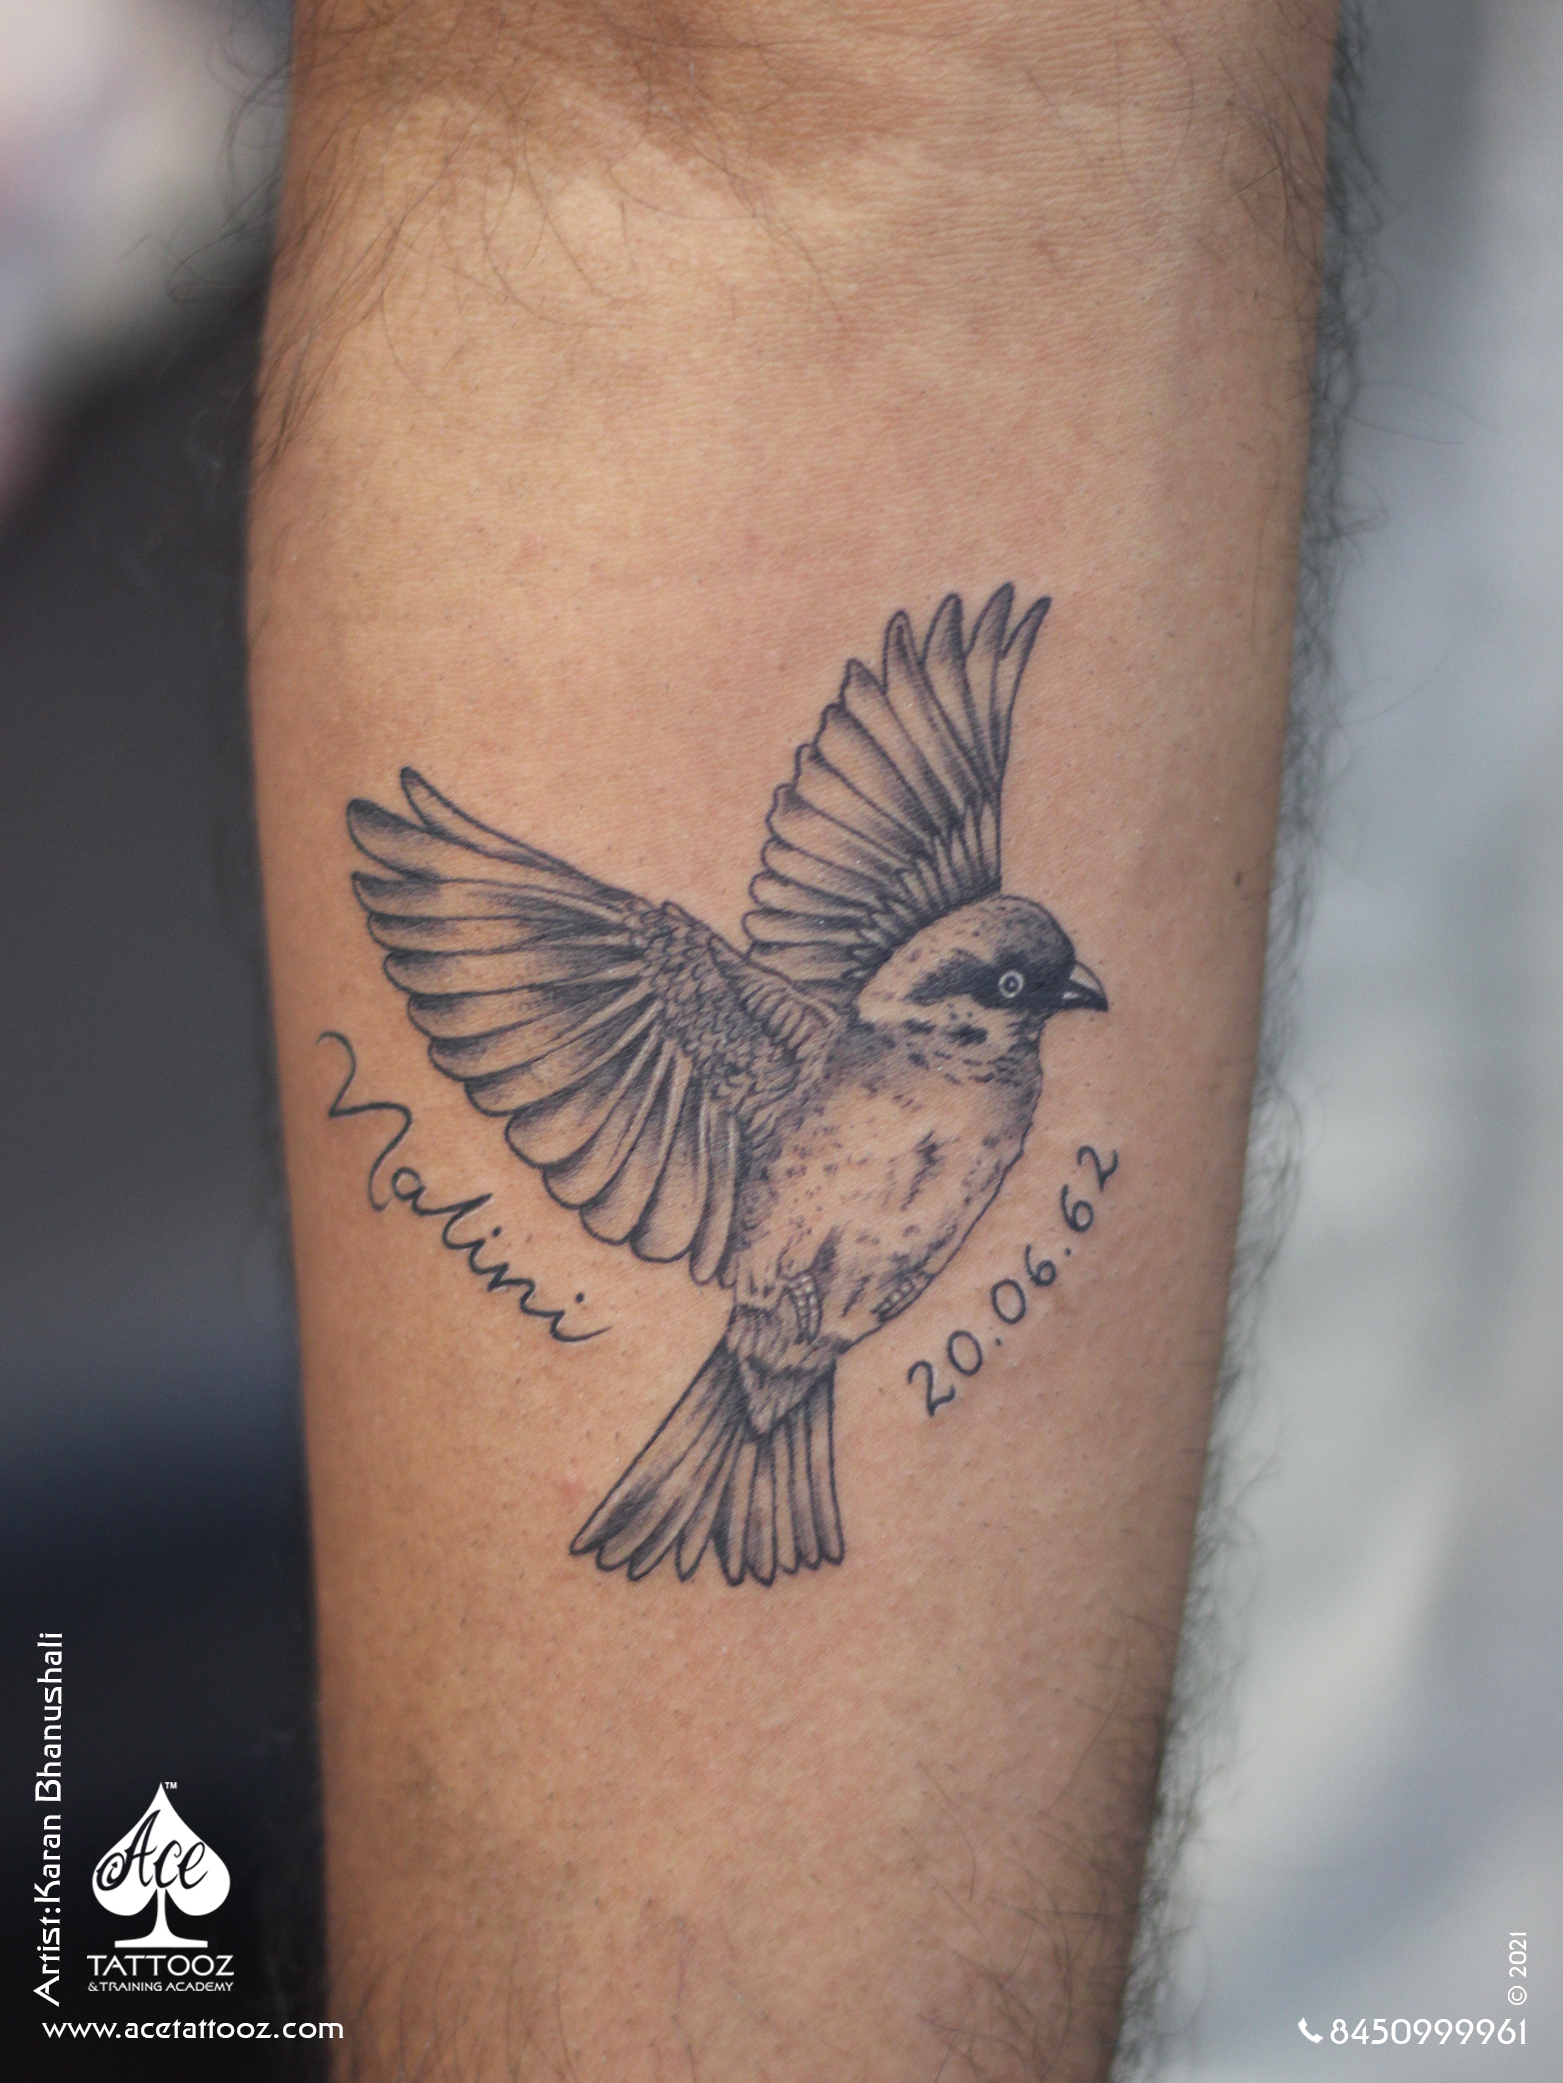 Sparrow Tattoo on Arm - Ace Tattooz